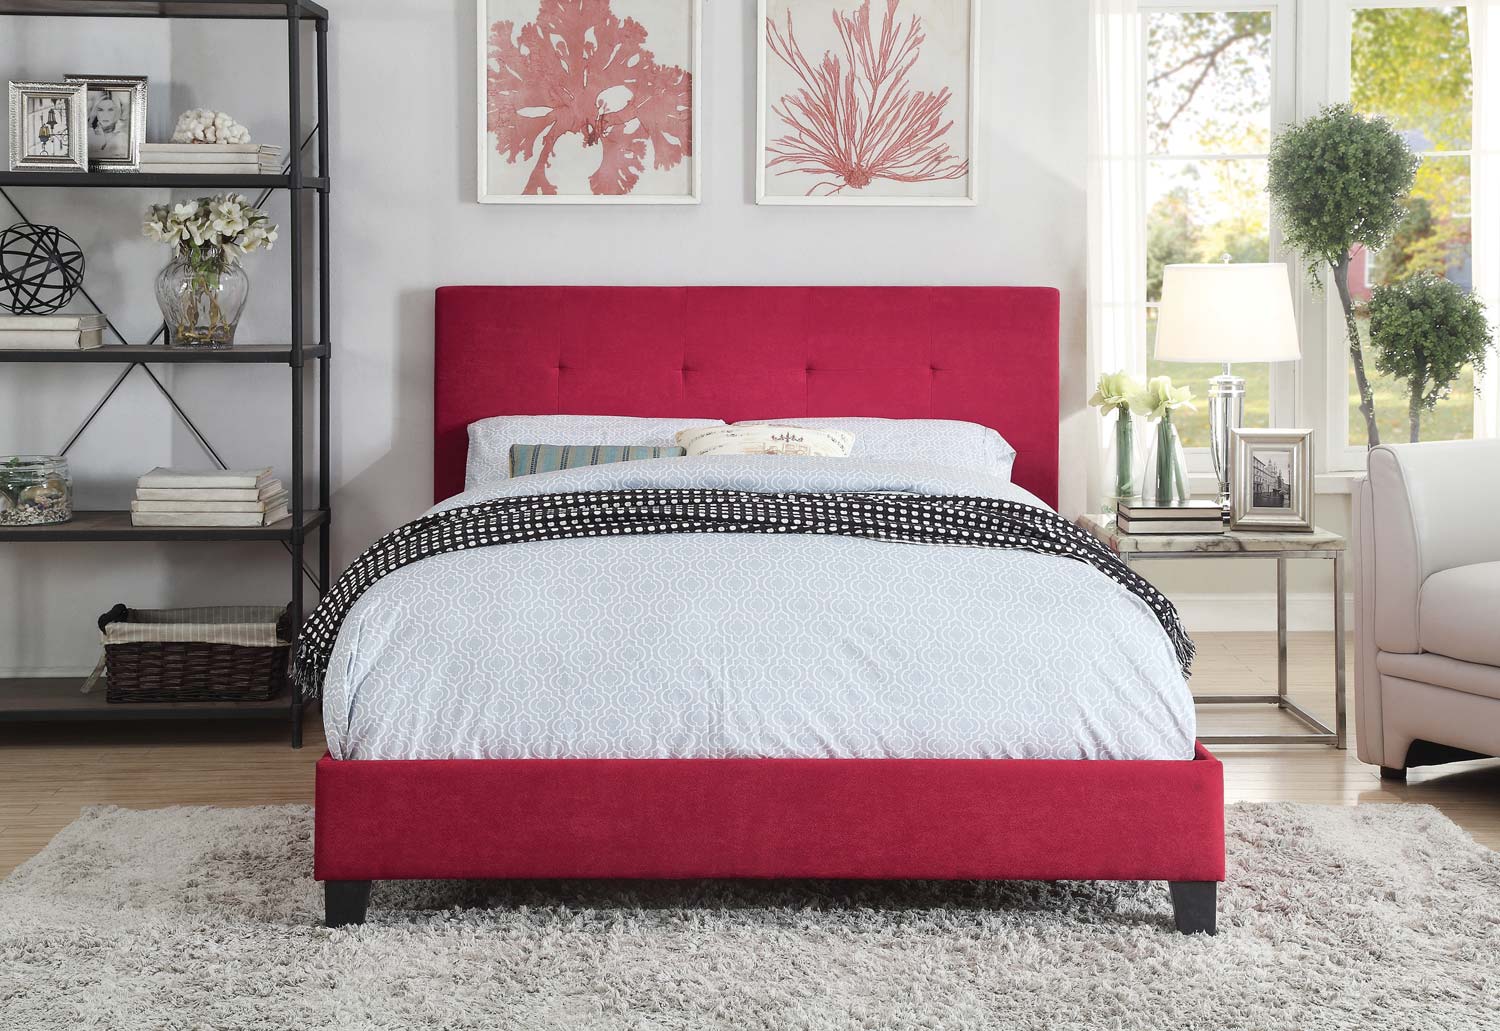 Homelegance Brice Upholstered Platform Bed - Red